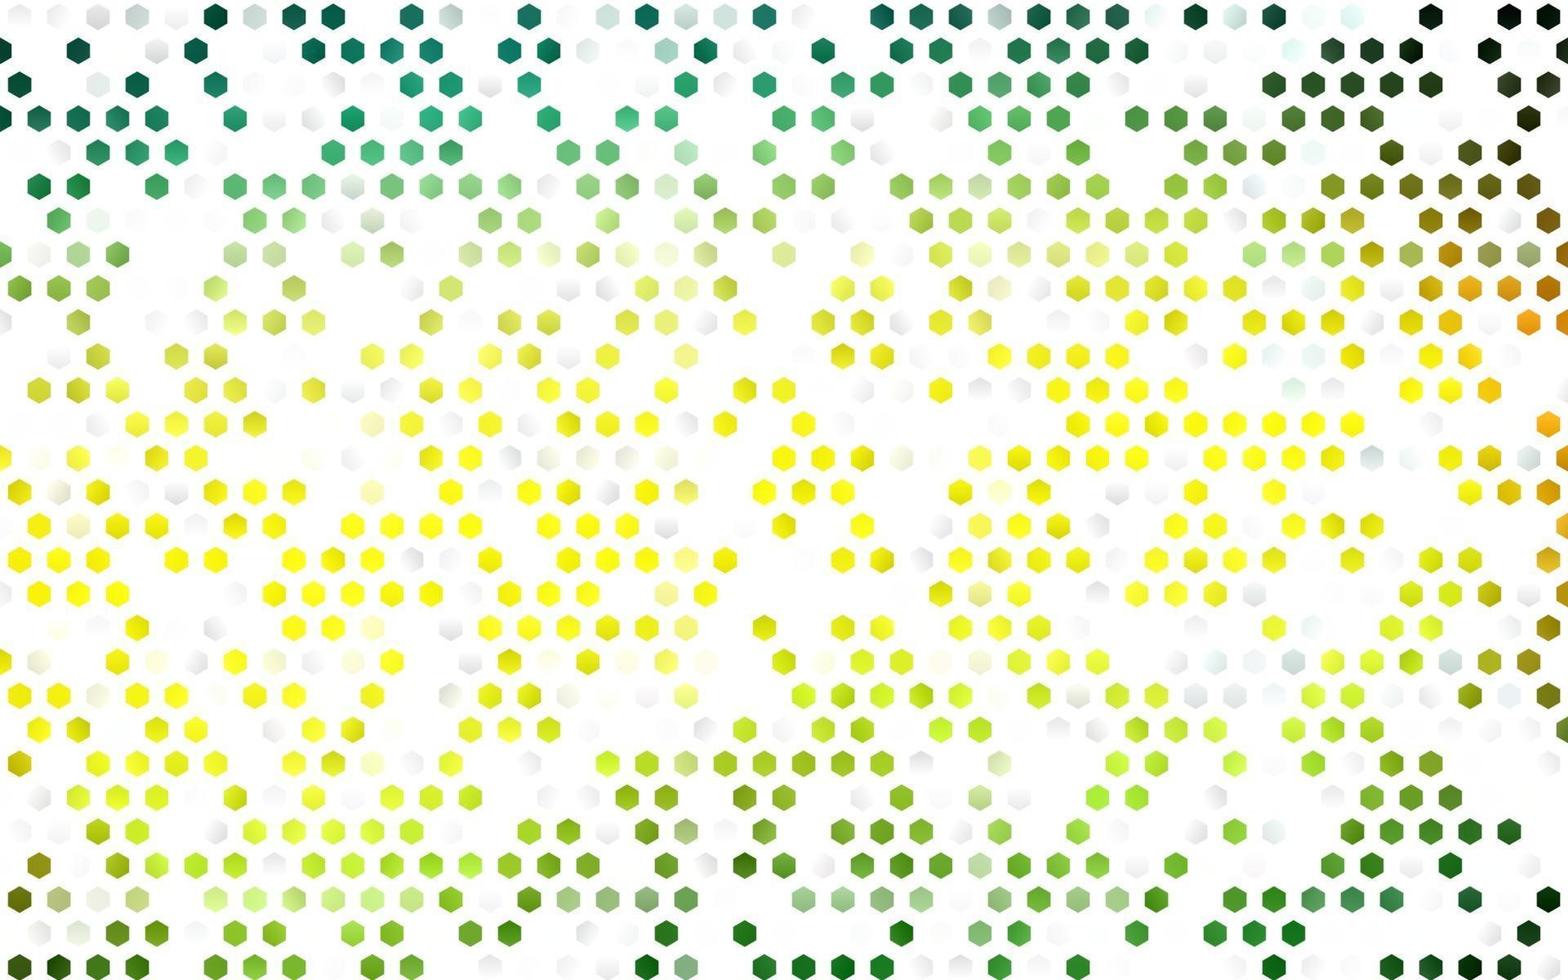 mörkgrön, gul vektor layout med sexkantiga former.